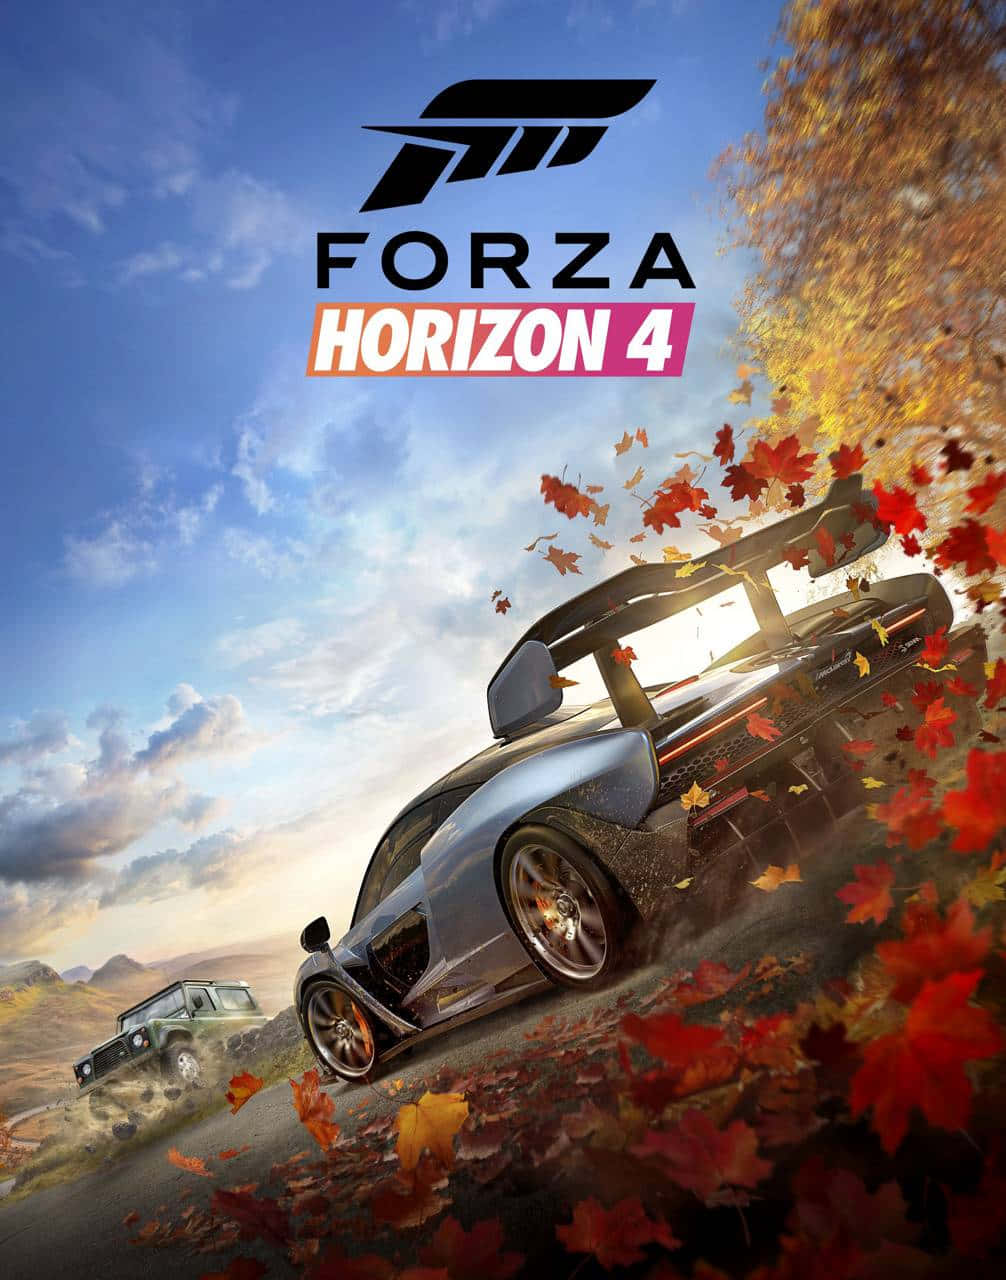 Genießensie Android Forza Horizon 4 In Hoher Auflösung.